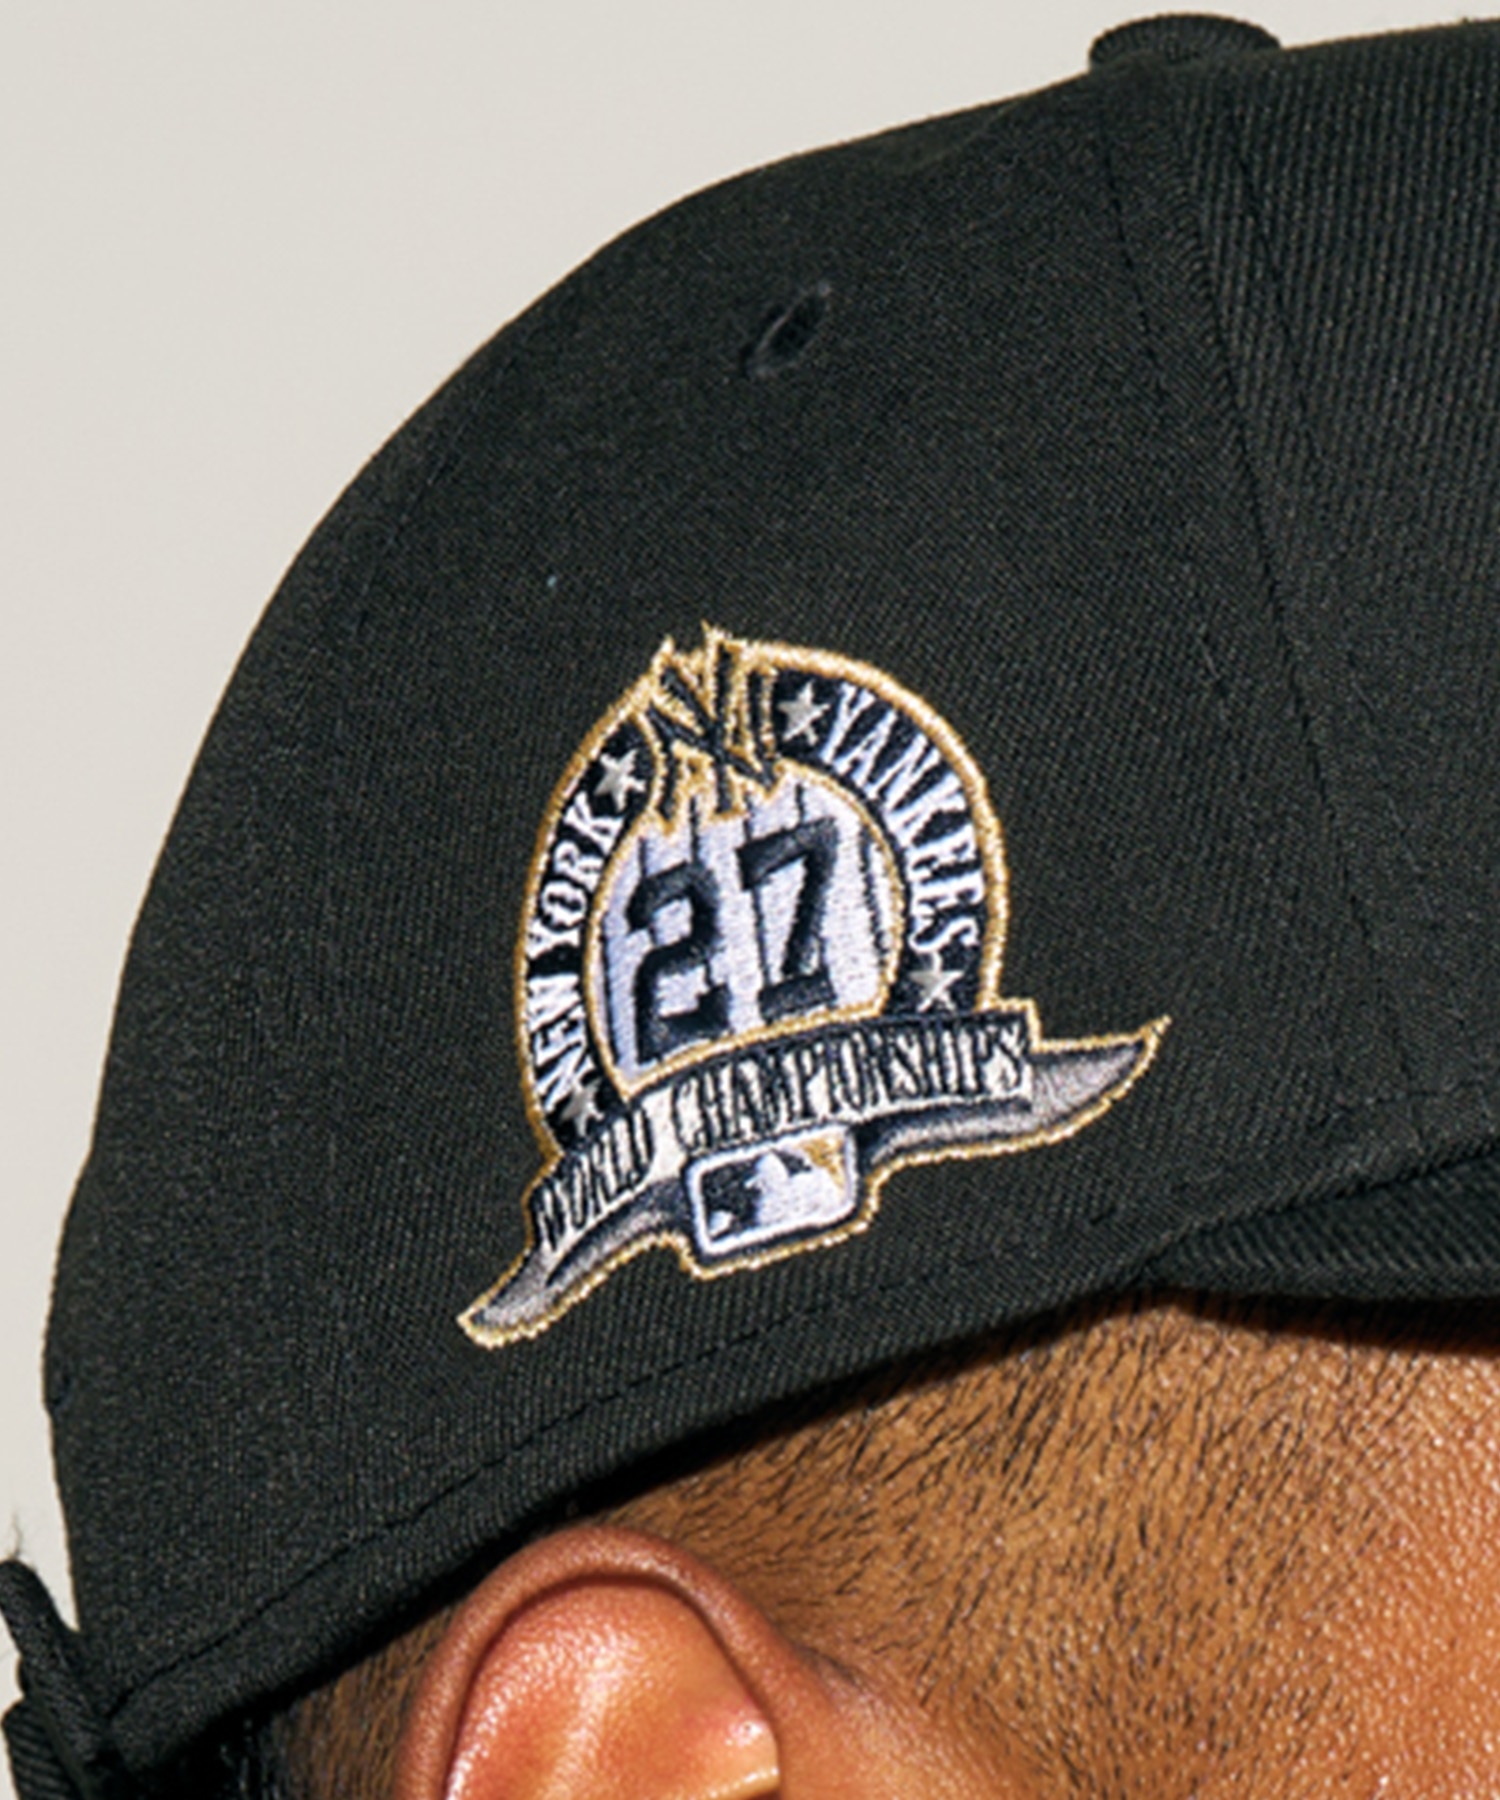 NEW ERA/ニューエラ LP 9FIFTY ニューヨーク・ヤンキース ブラック×ホワイト キャップ 帽子 14322897 ムラサキスポーツ限定(BLK-FREE)